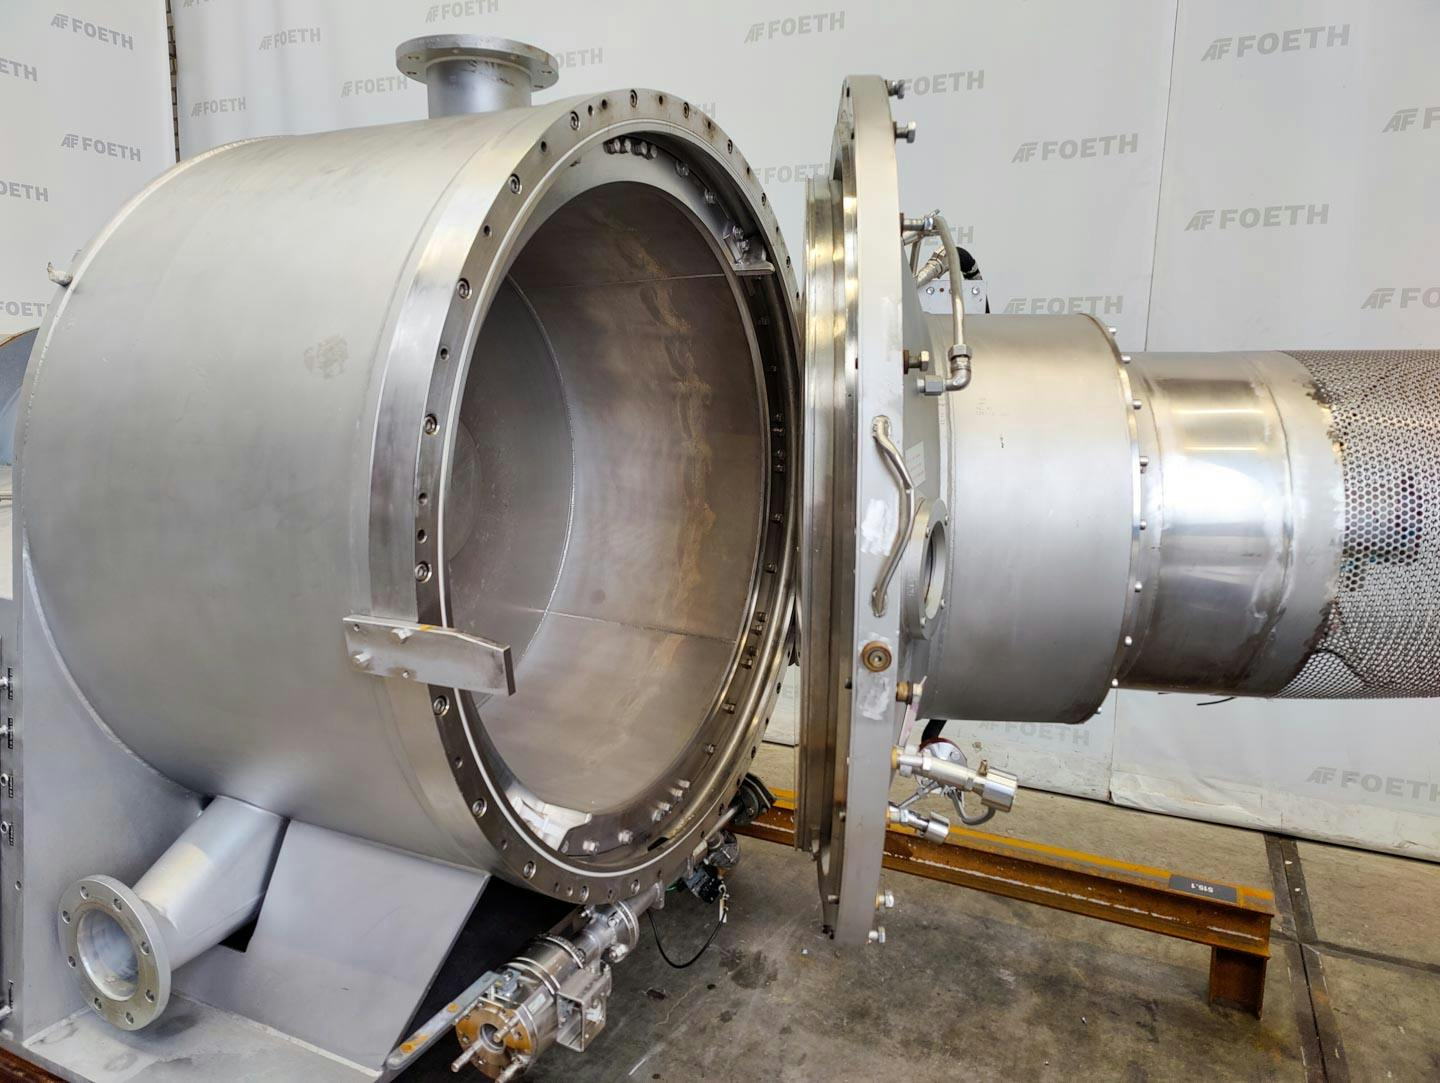 Fima Process Trockner TZT-1300 - centrifuge dryer - Wirówka koszowa - image 7